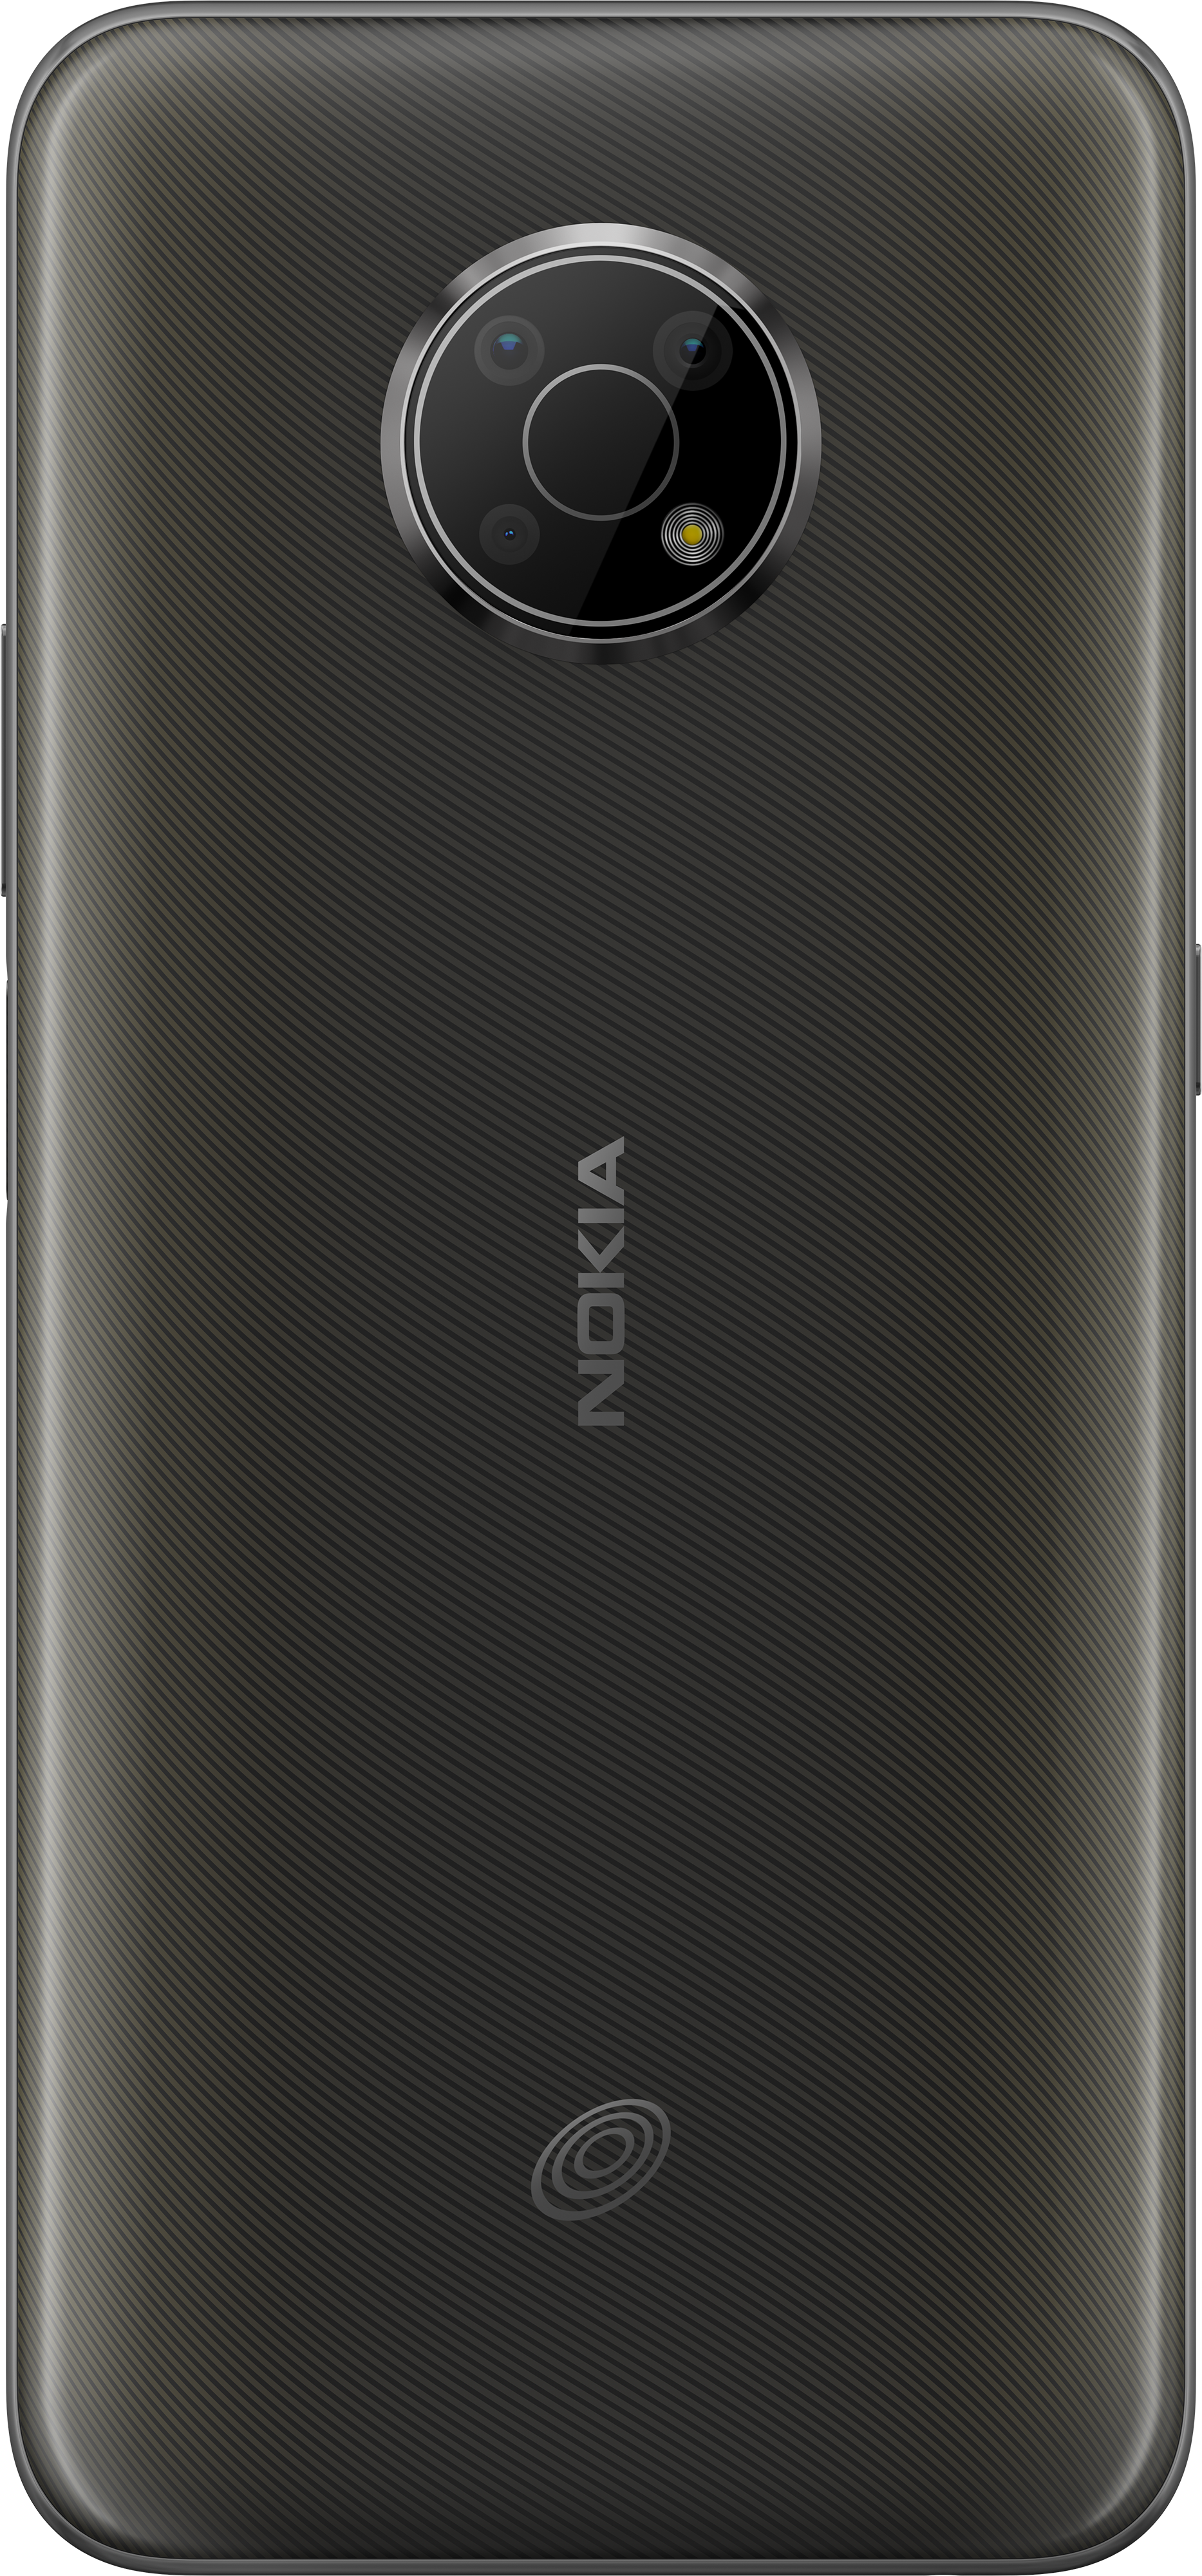 future nokia phones